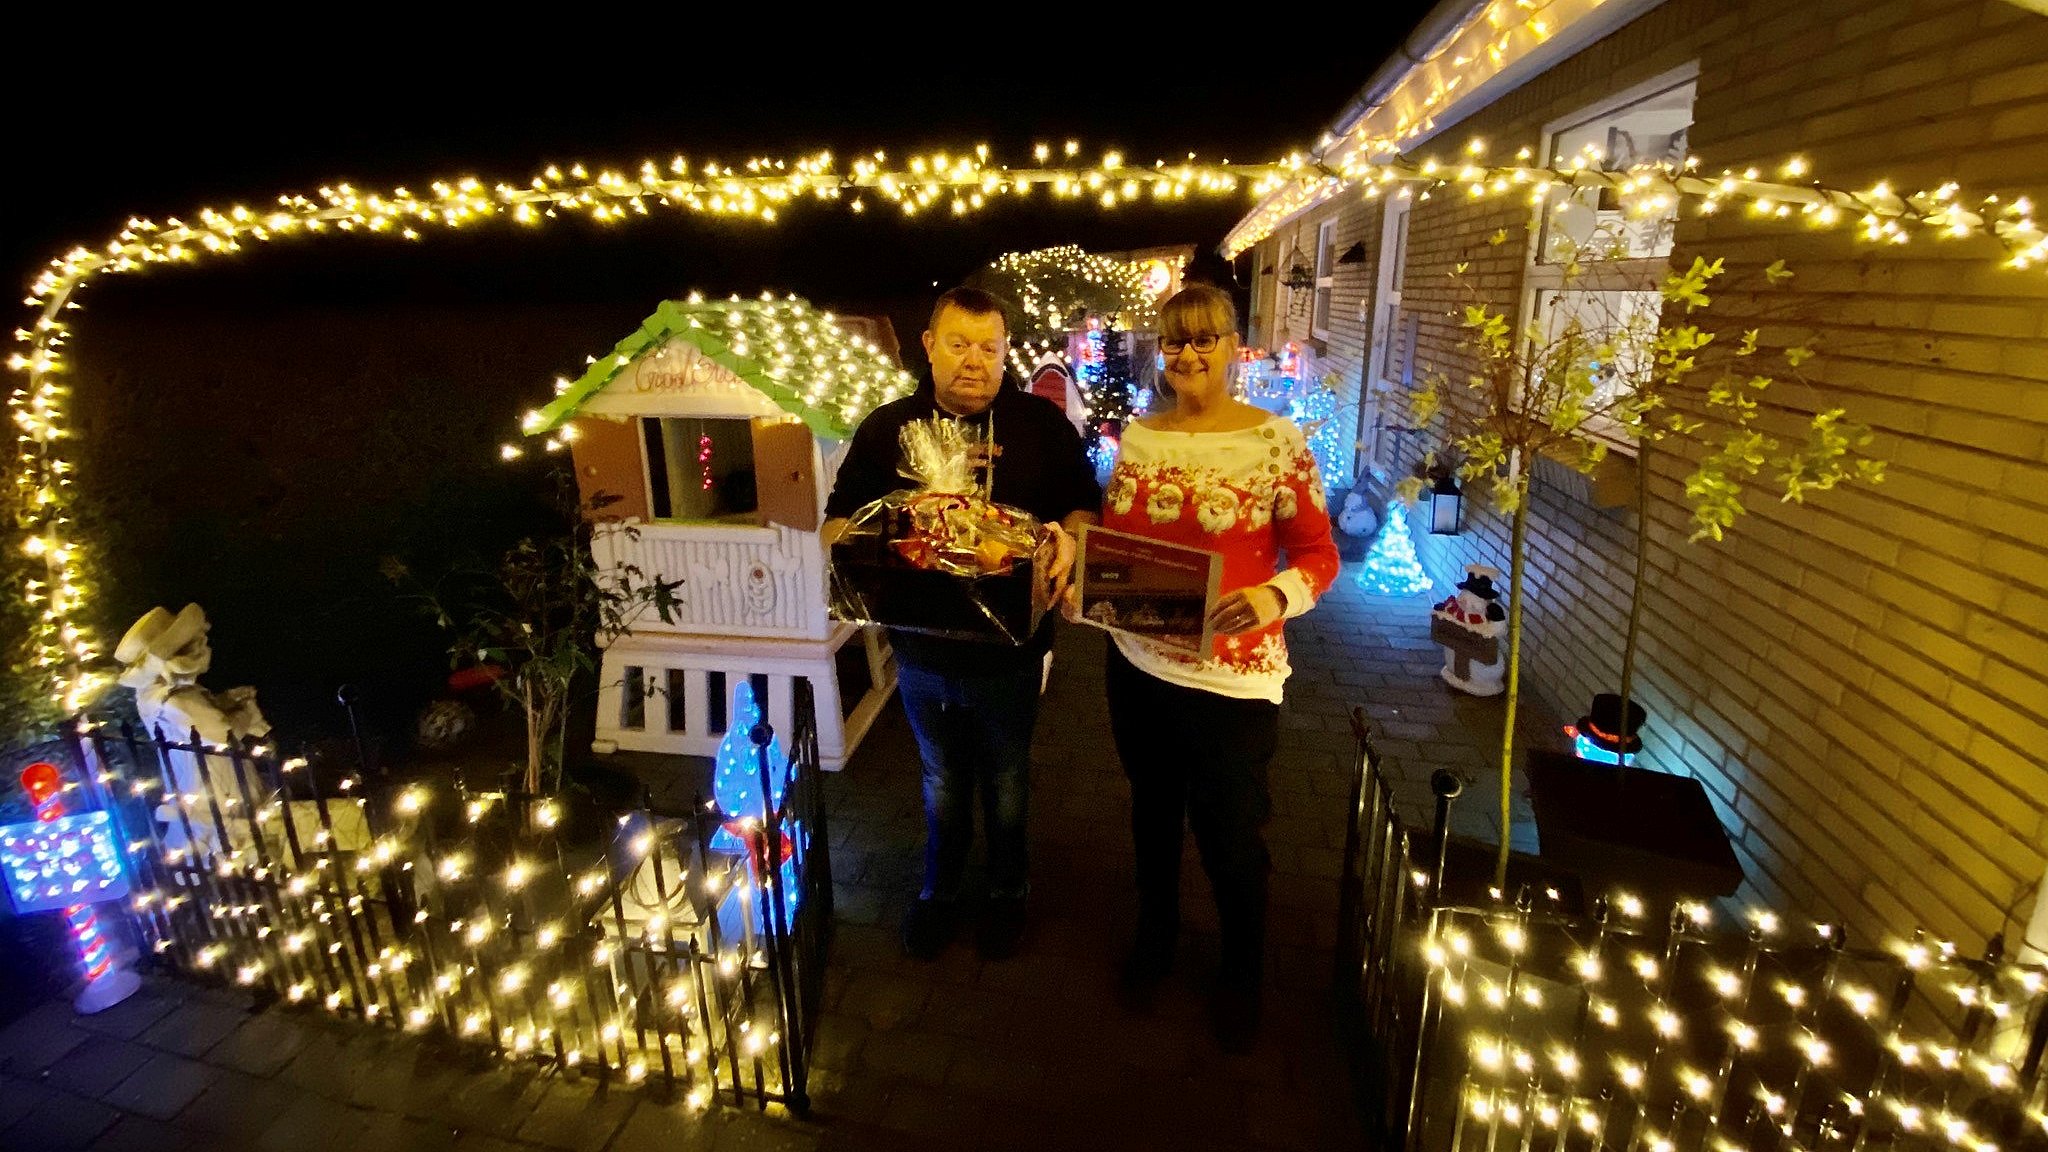 Mange tøver med at opsætte julelys: Det kan virke provokerende på folk | TV2 ØST